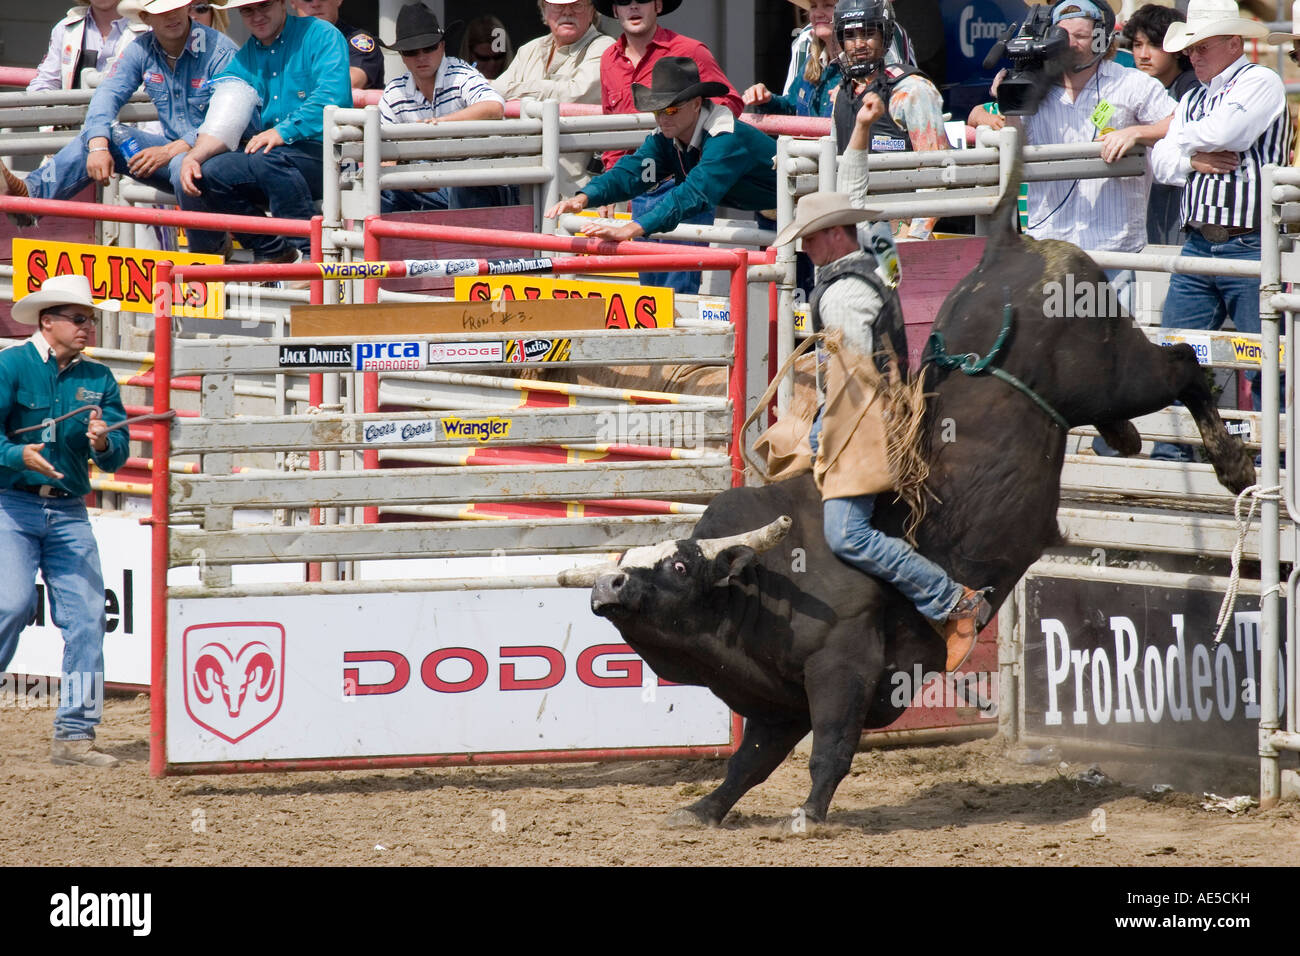 Cowboy Reiten einen Stier, der treten und Ruckeln wie kommt er aus dem Tor bei einem Rodeo-Bullenreiten Wettbewerb Stockfoto